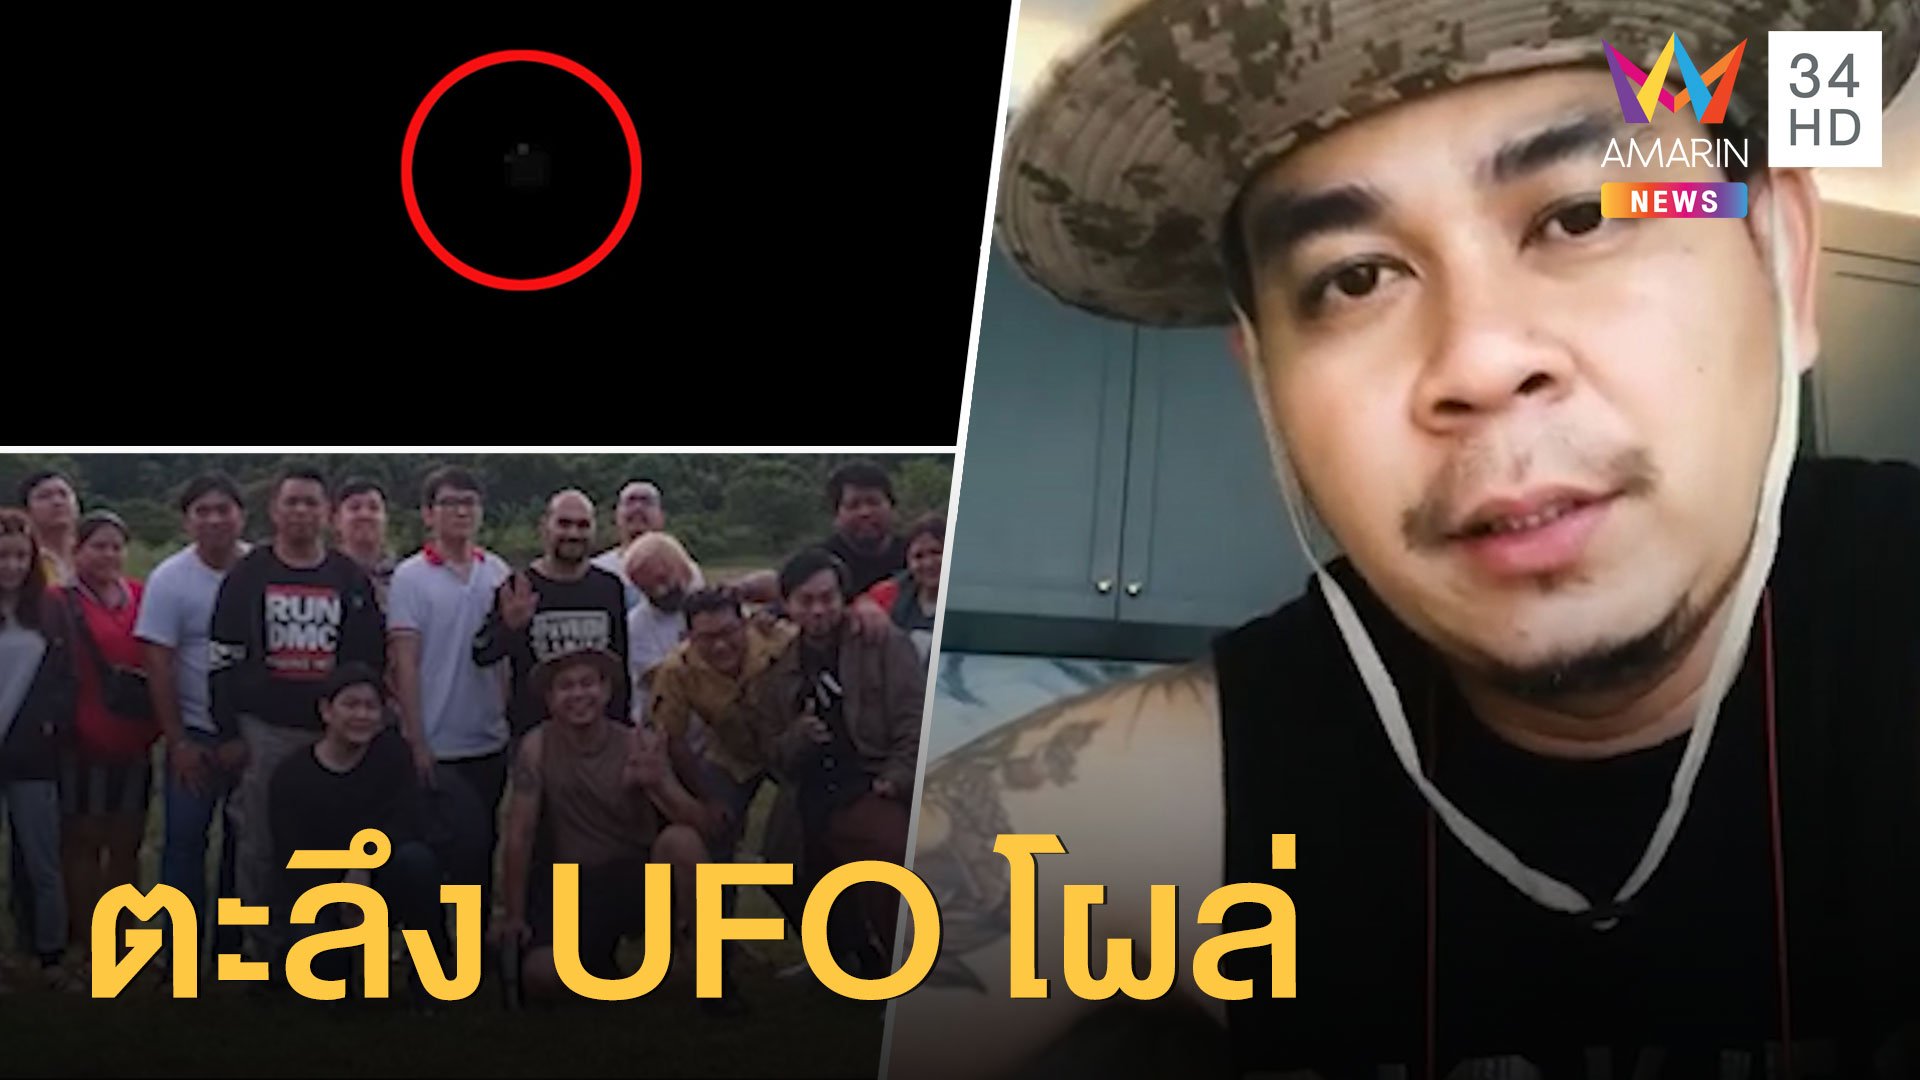 ตะลึง UFO โผล่อ่างเก็บน้ำทรายทอง ที่นครนายก | ข่าวอรุณอมรินทร์ สุดสัปดาห์ | 19 ก.ค. 63 | AMARIN TVHD34